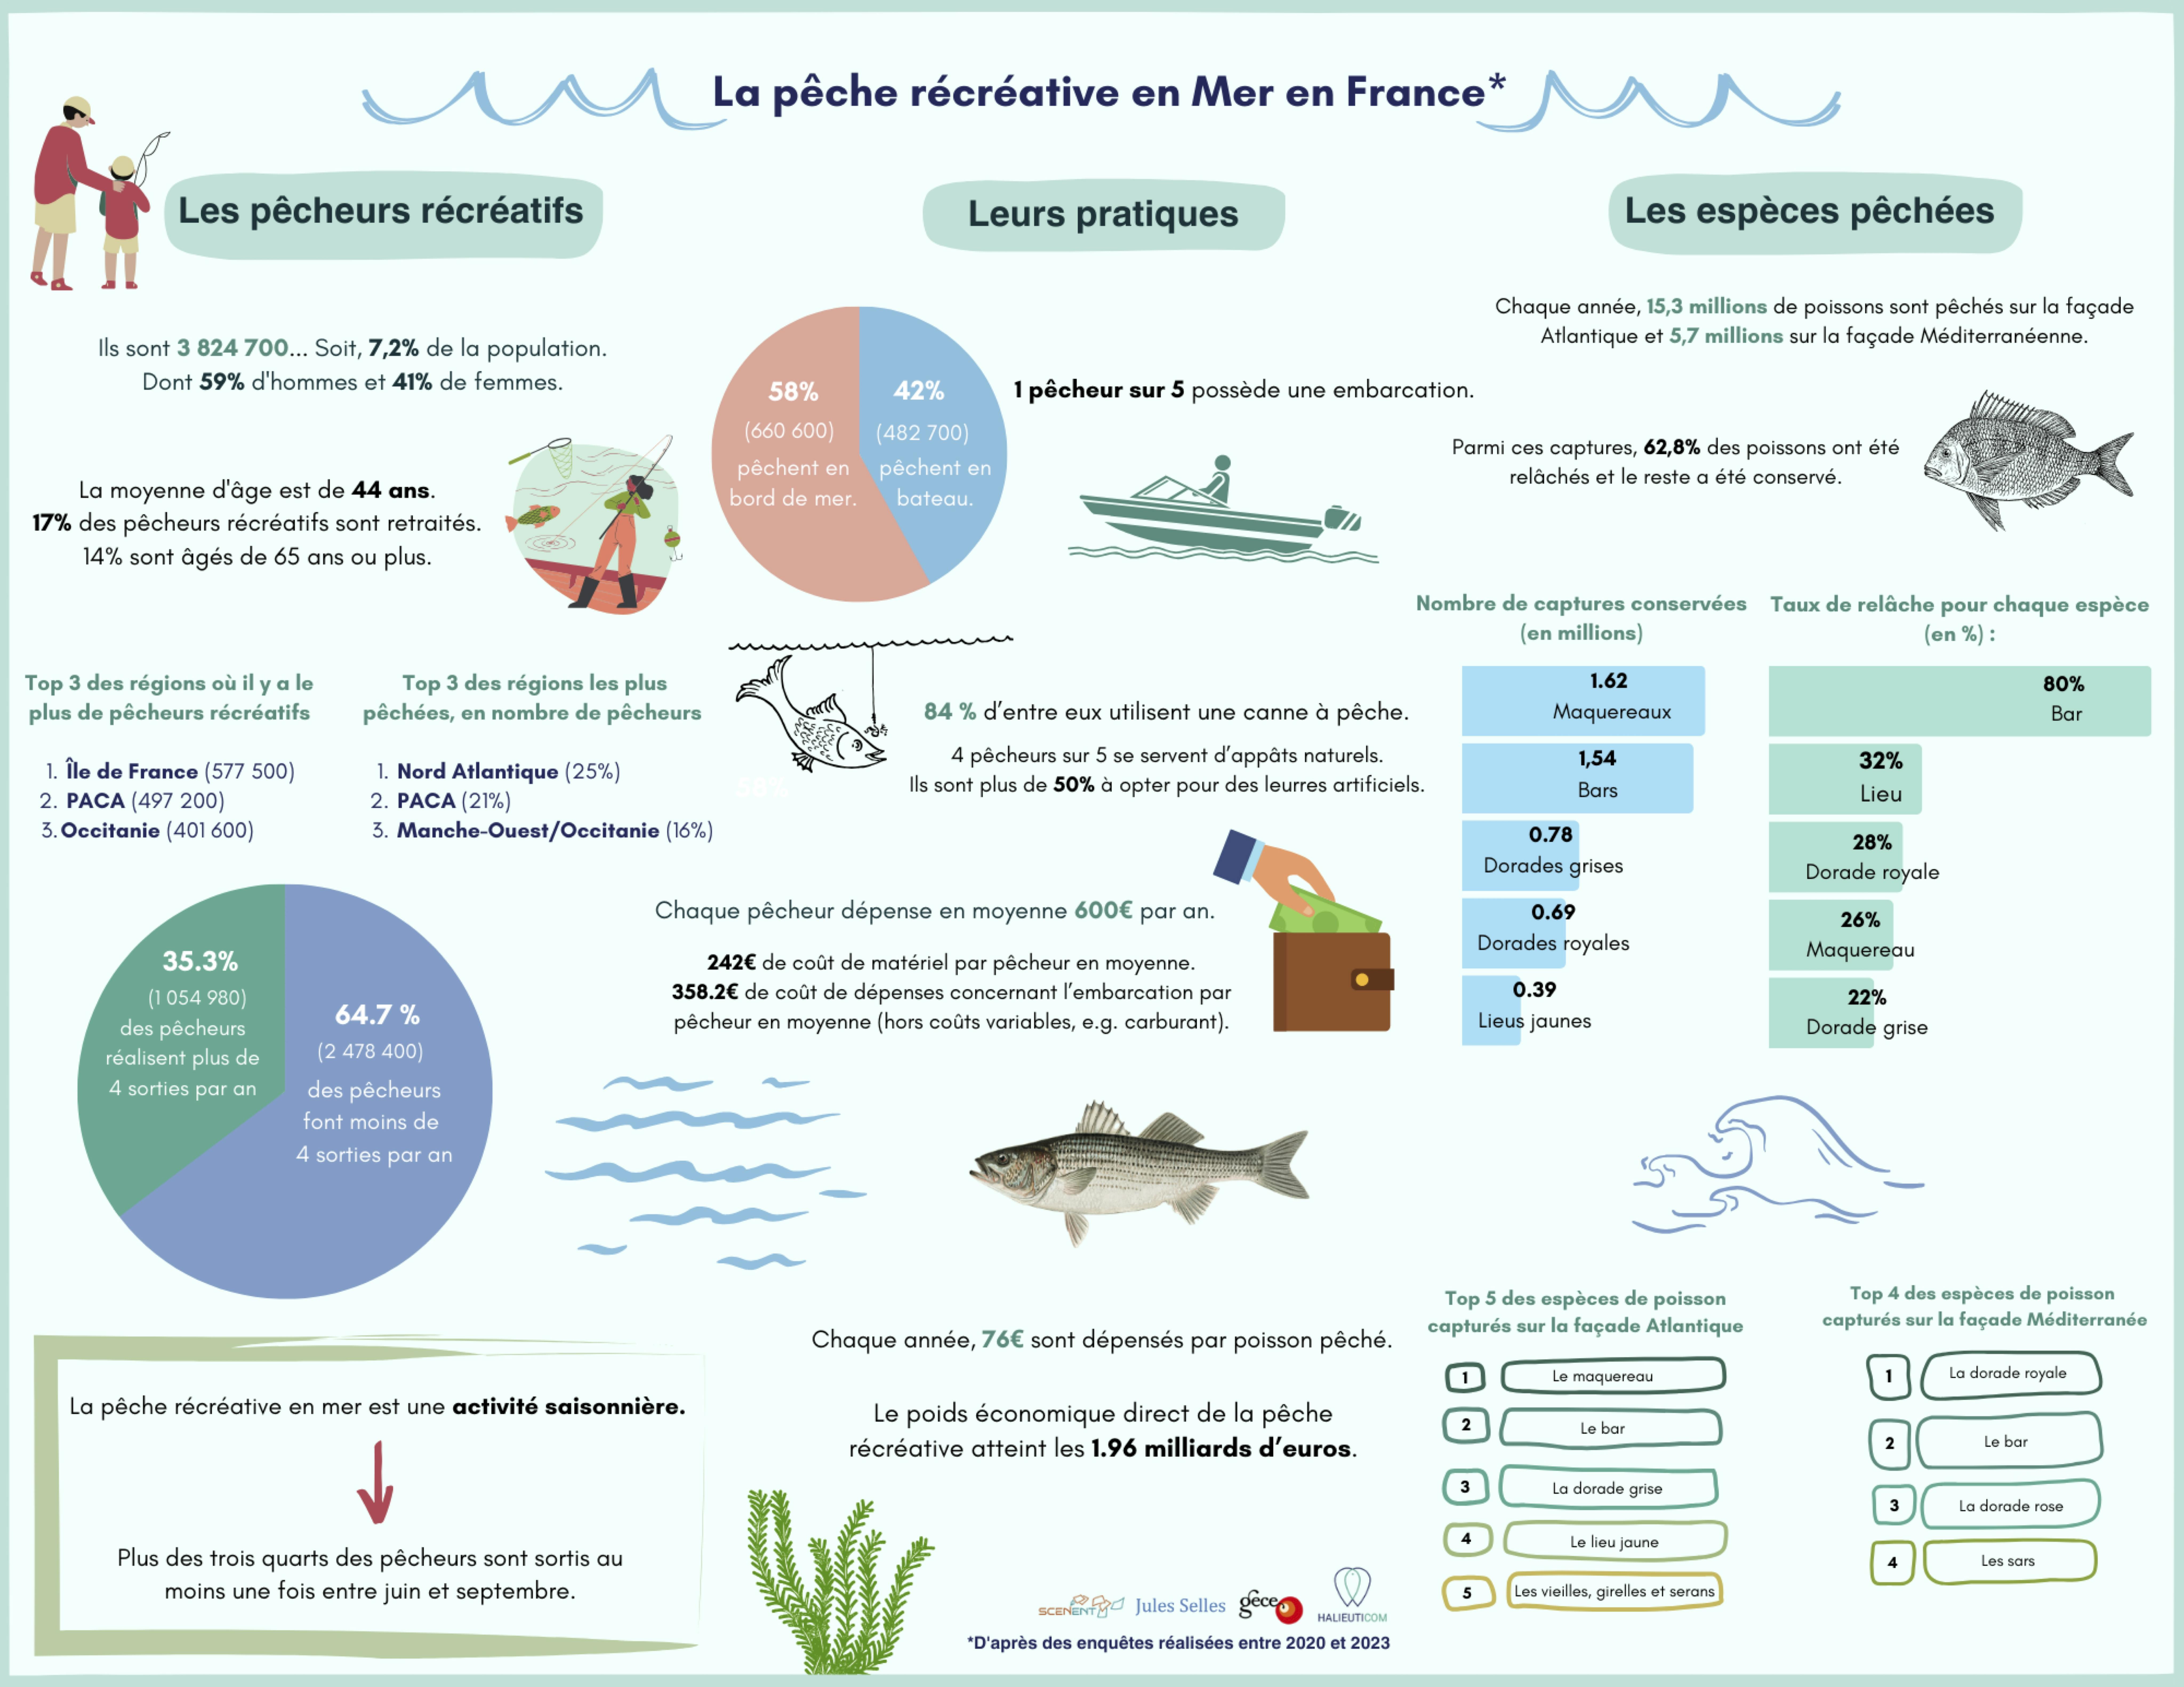 Infographie de l'étude nationale pêche récréative en mer menée entre 2020 et 2023